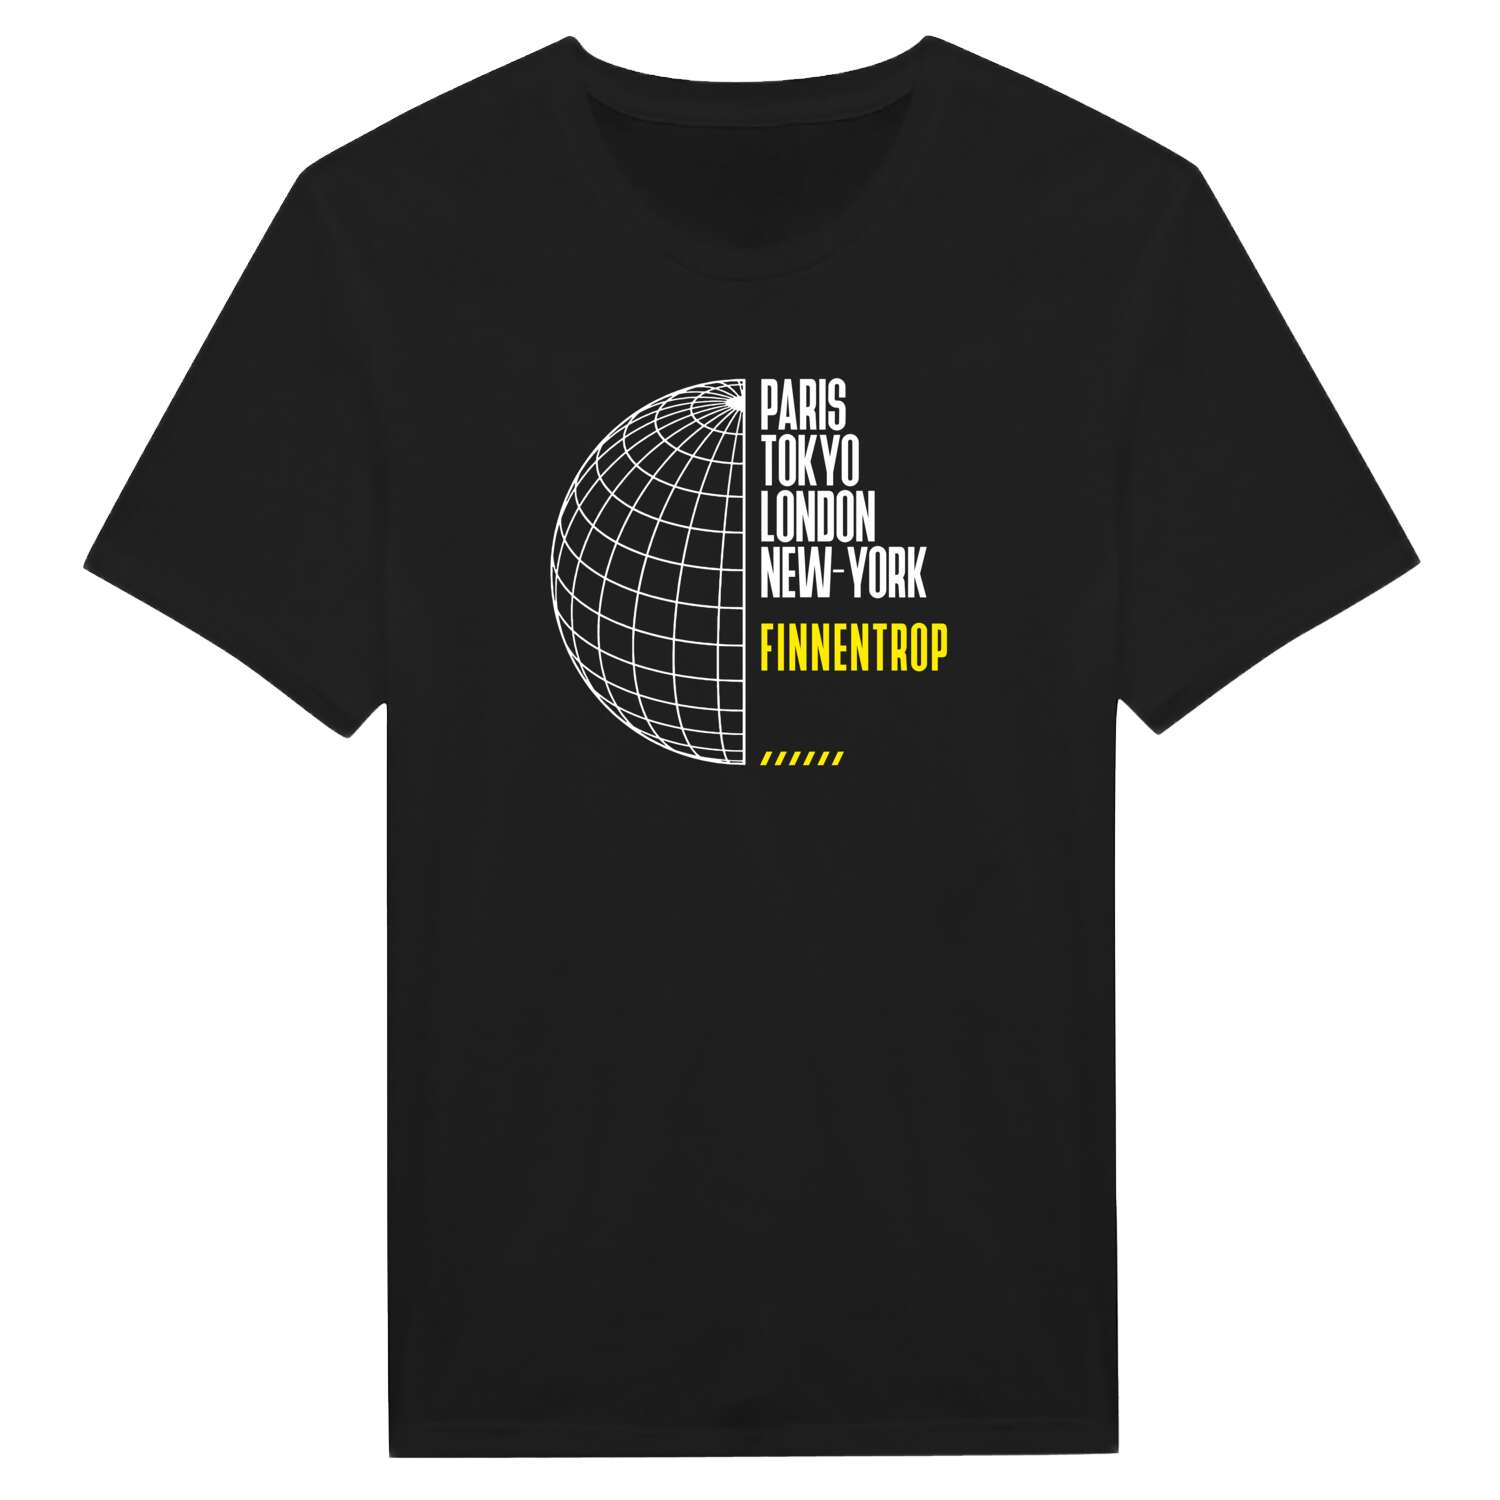 Finnentrop T-Shirt »Paris Tokyo London«